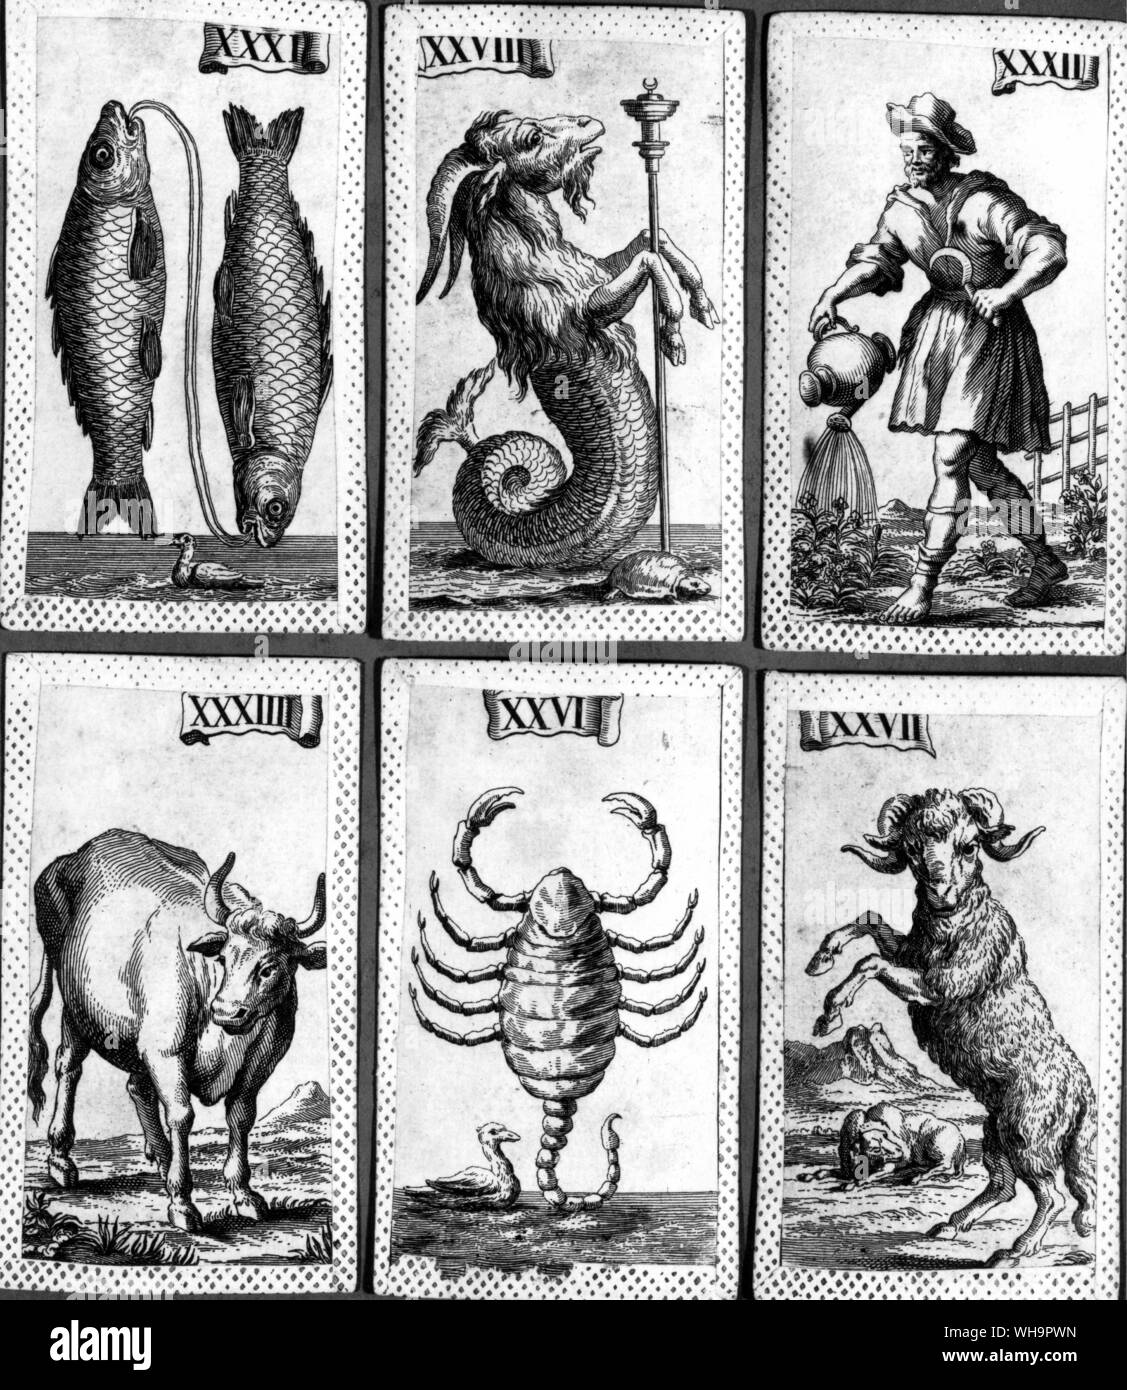 Los signos del zodíaco desde un paquete minchiate: Piscis, Capricornio, Acuario, Tauro, Escorpio y Aries Foto de stock